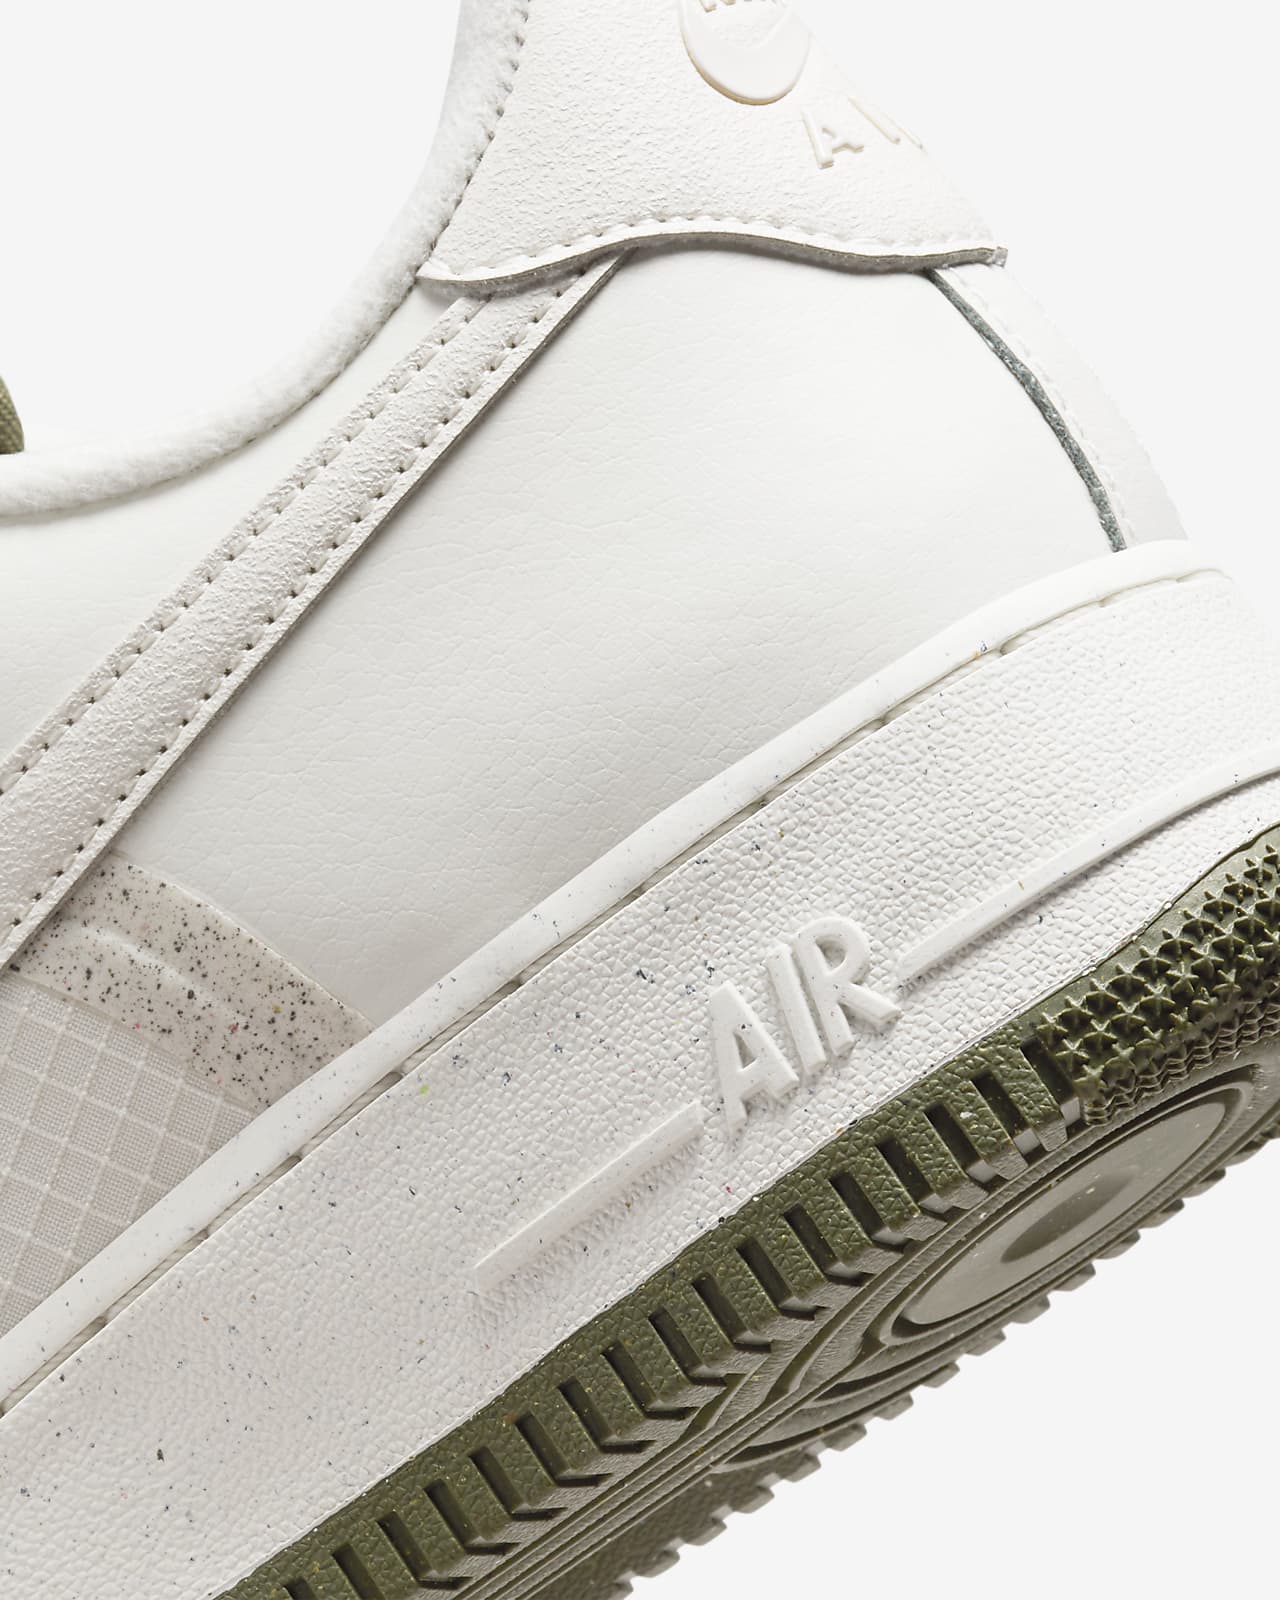 Nike Men's Air Force 1 07 LV8 Sneaker